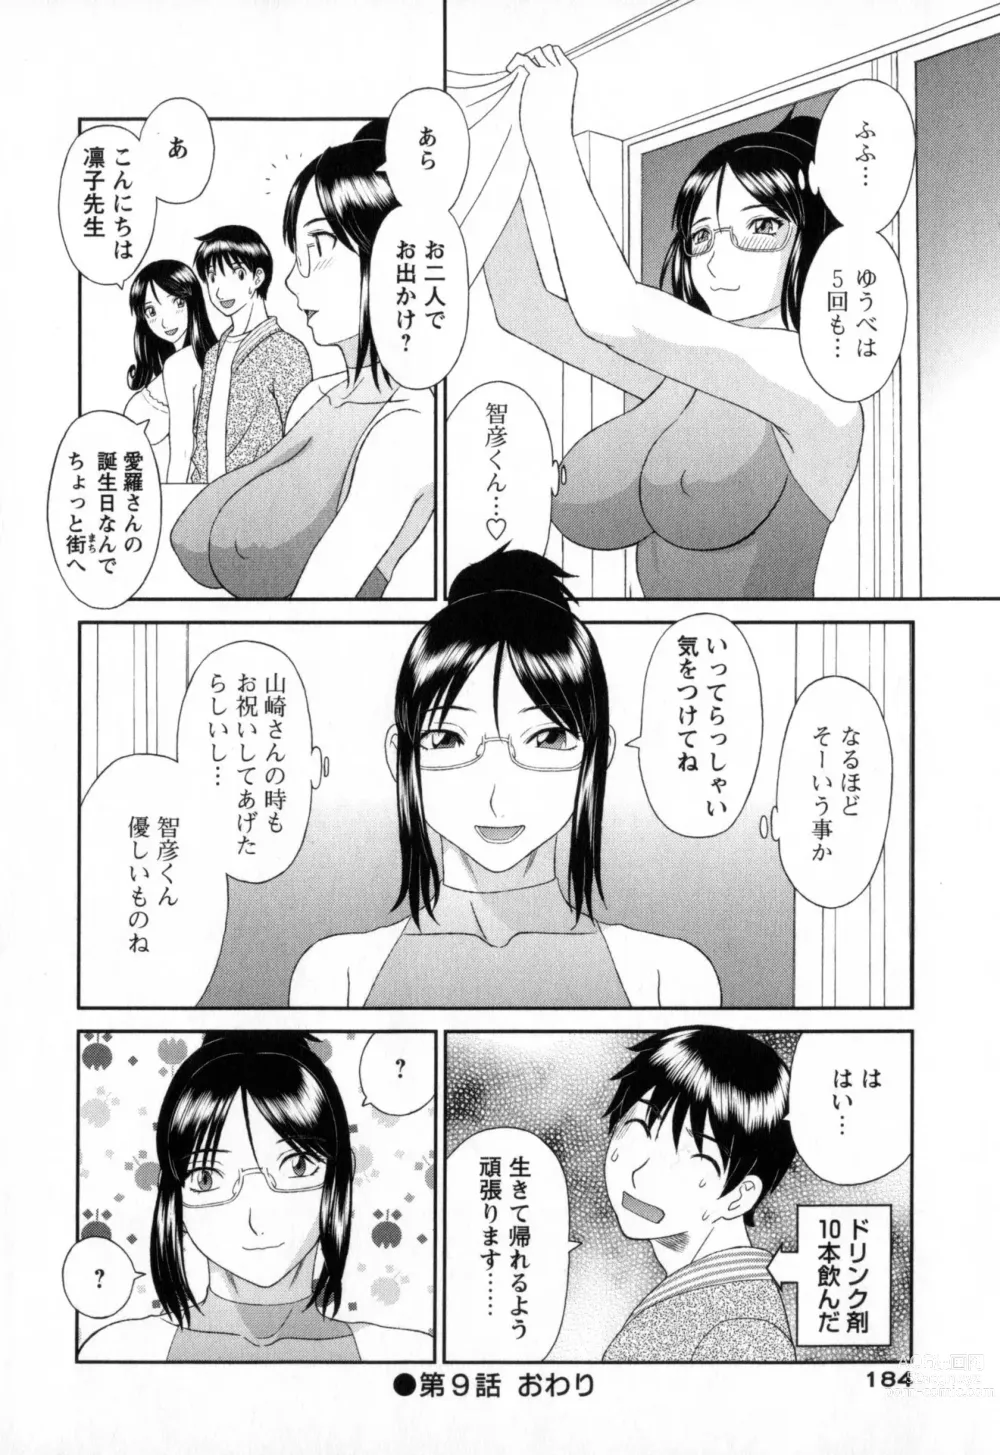 Page 184 of manga Gokuraku Ladies - Paradise Ladies Noumitsu Hen